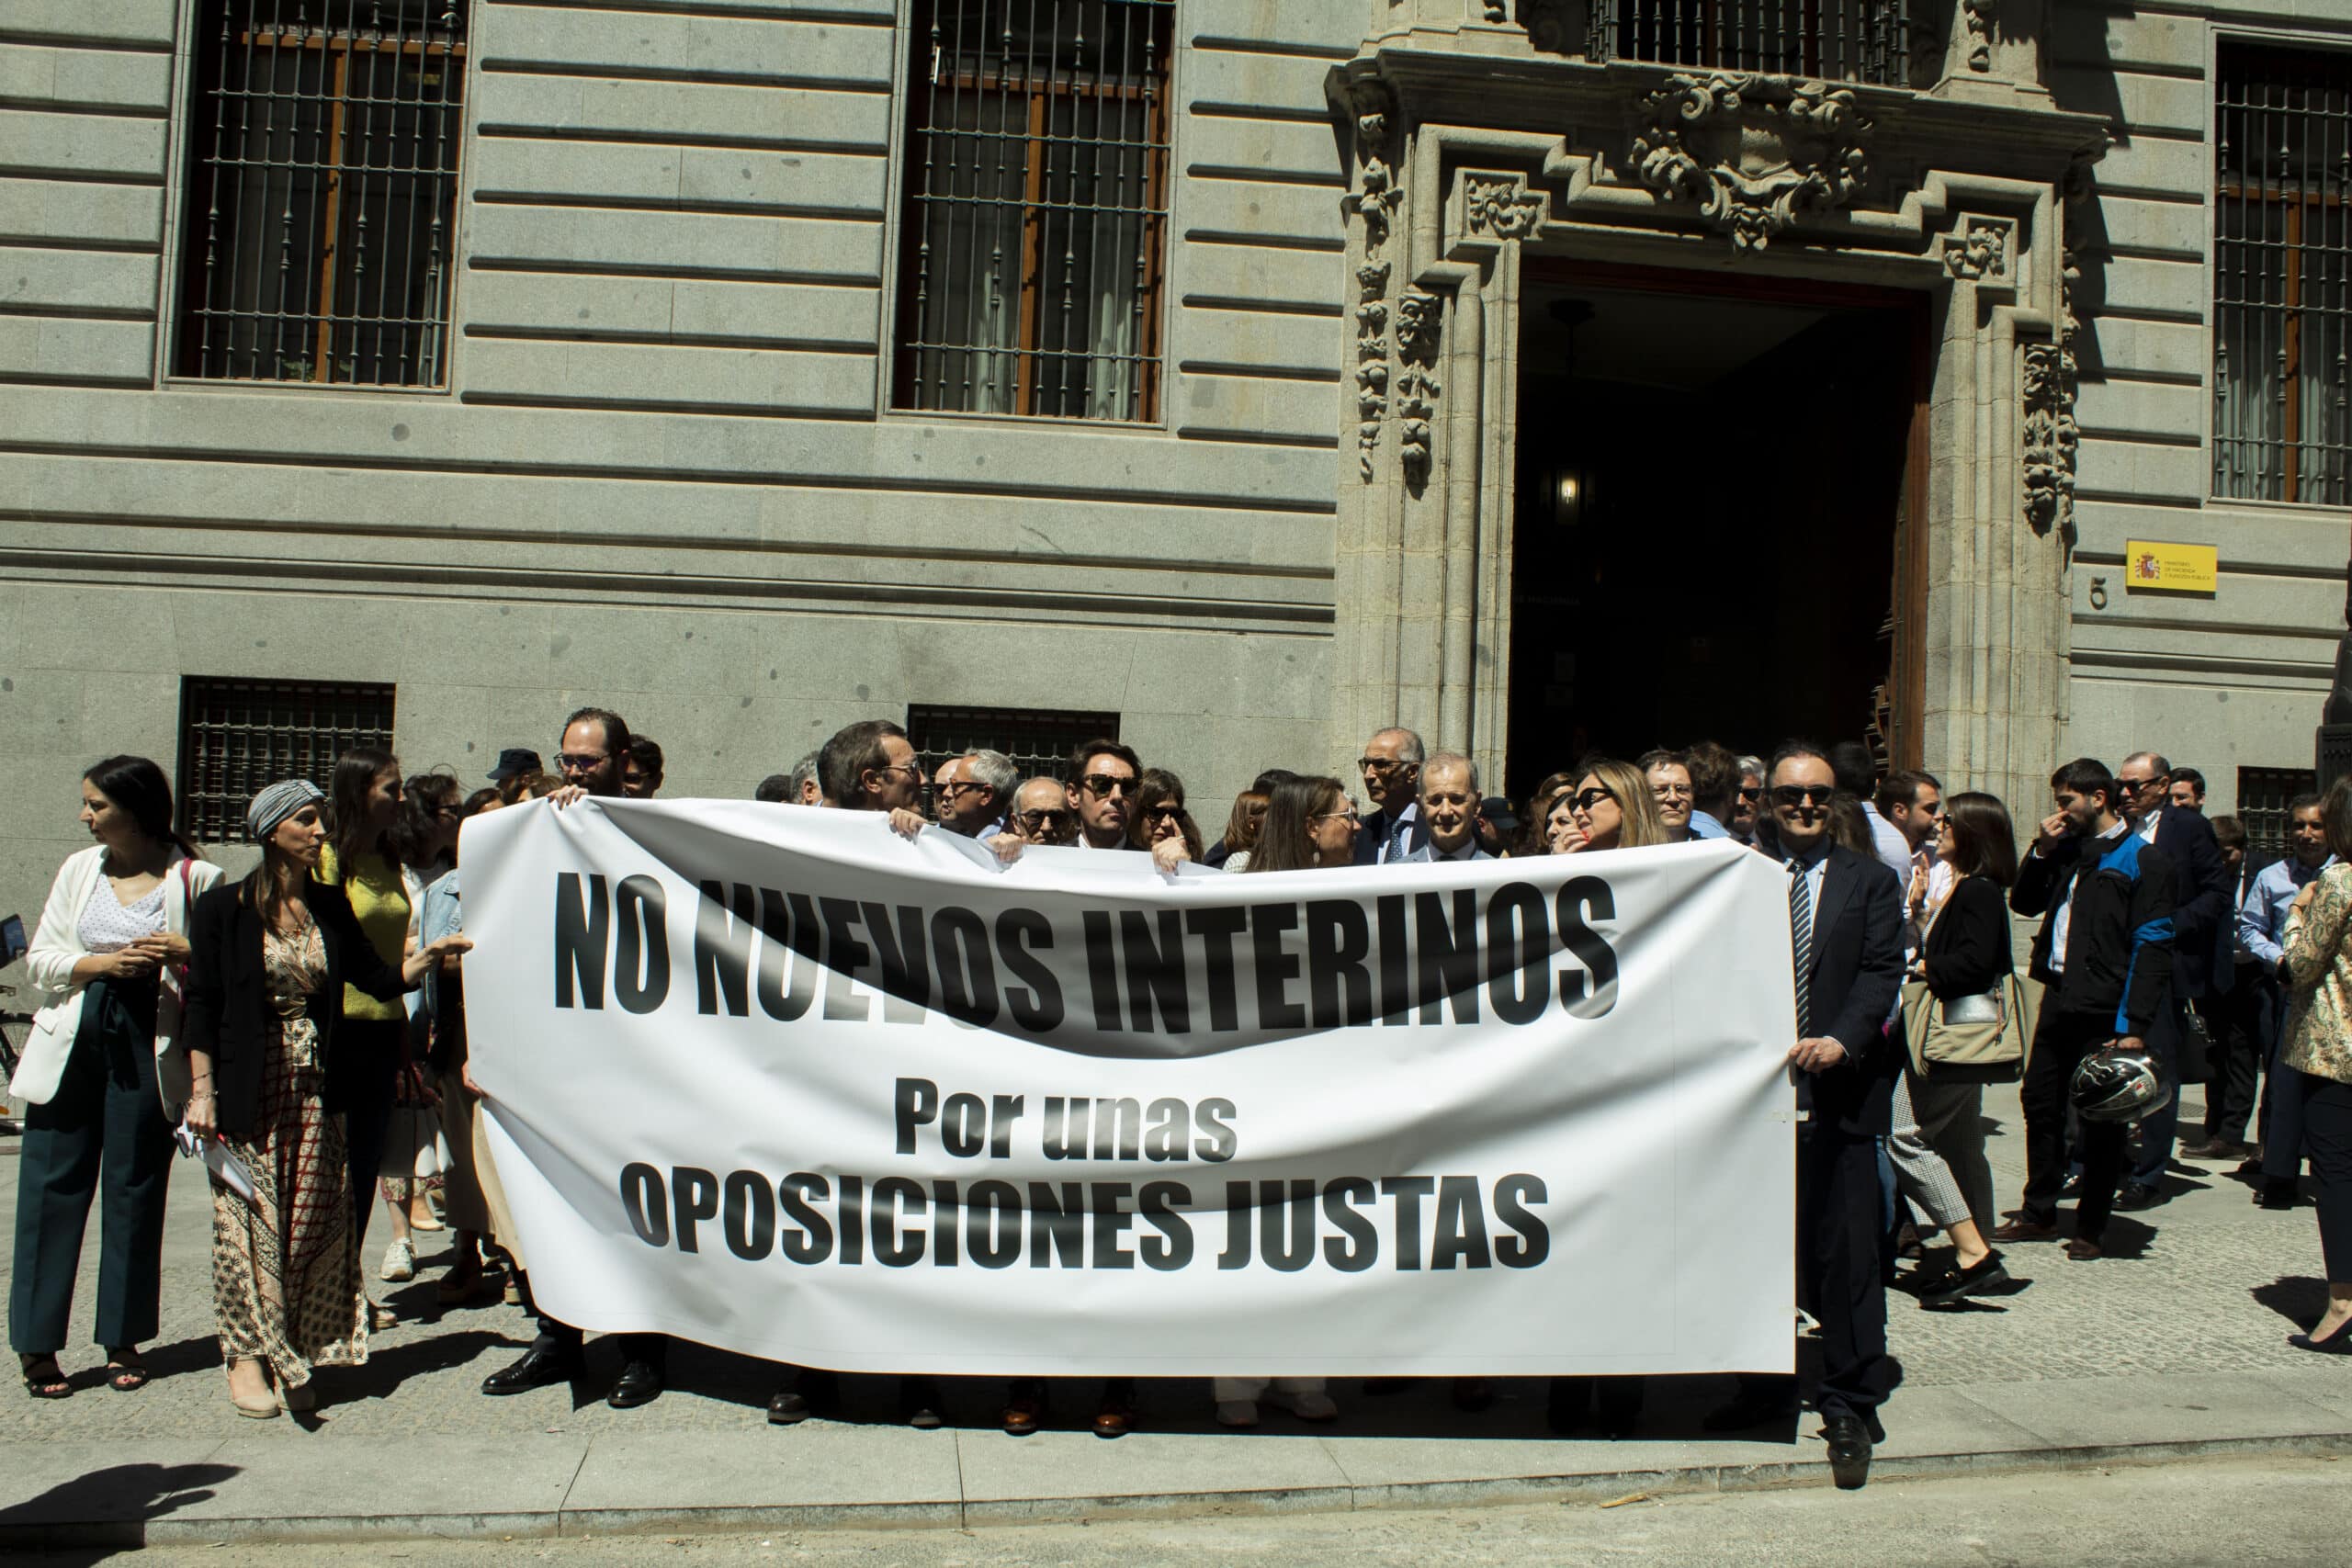 Los inspectores de Hacienda, interventores y auditores se manifiestan en contra de los interinos